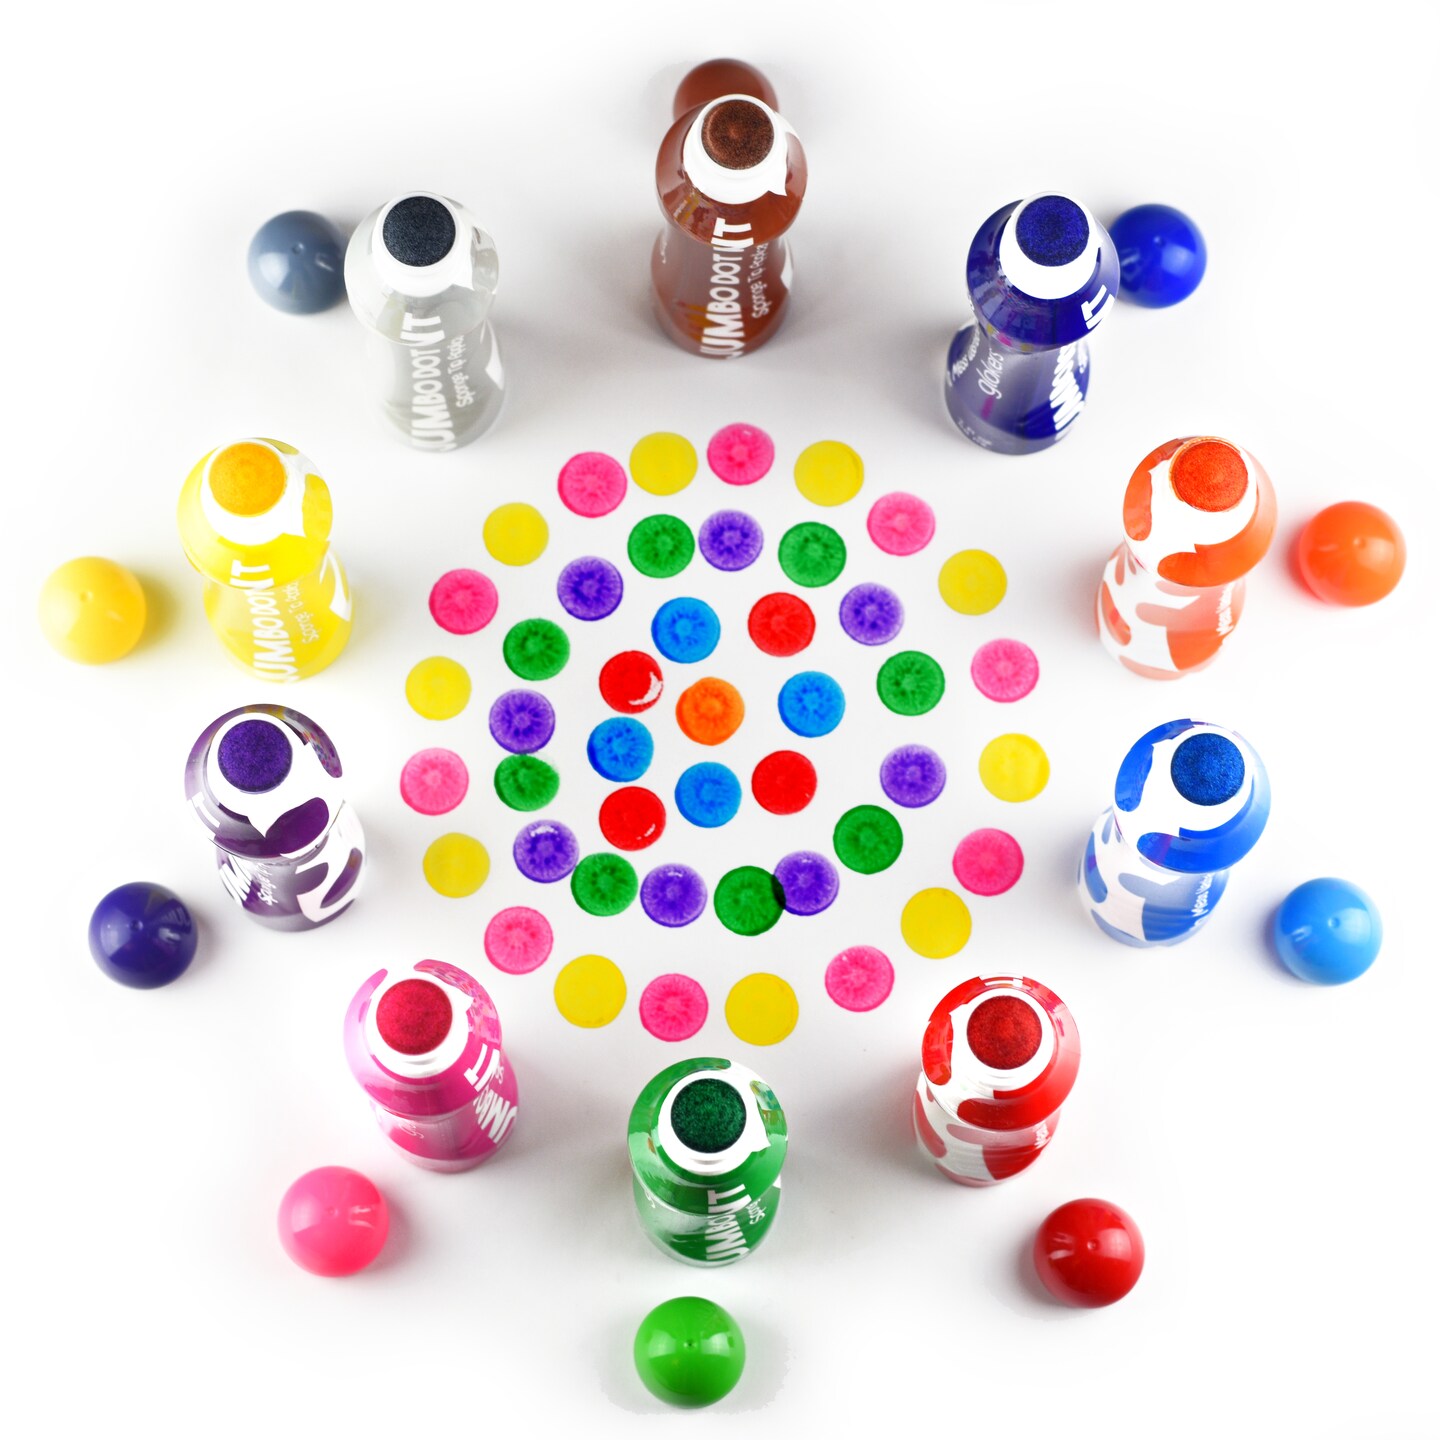  Yuanhe Dot Markers Bingo Daubers - 10 Colors Washable